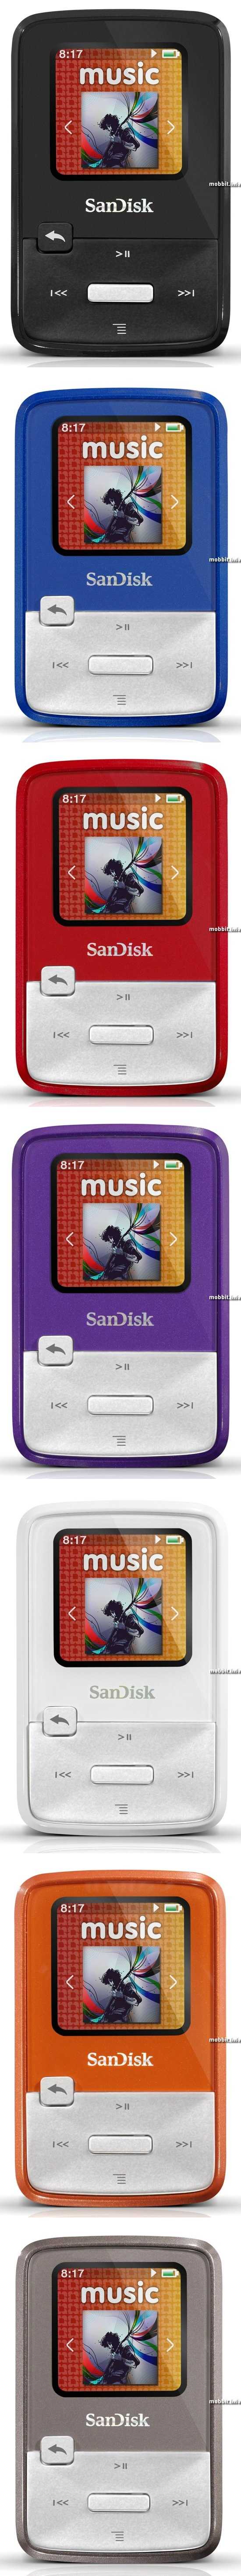 Sandisk sansa clip zip 4gb - купить , скидки, цена, отзывы, обзор, характеристики - mp3 плееры